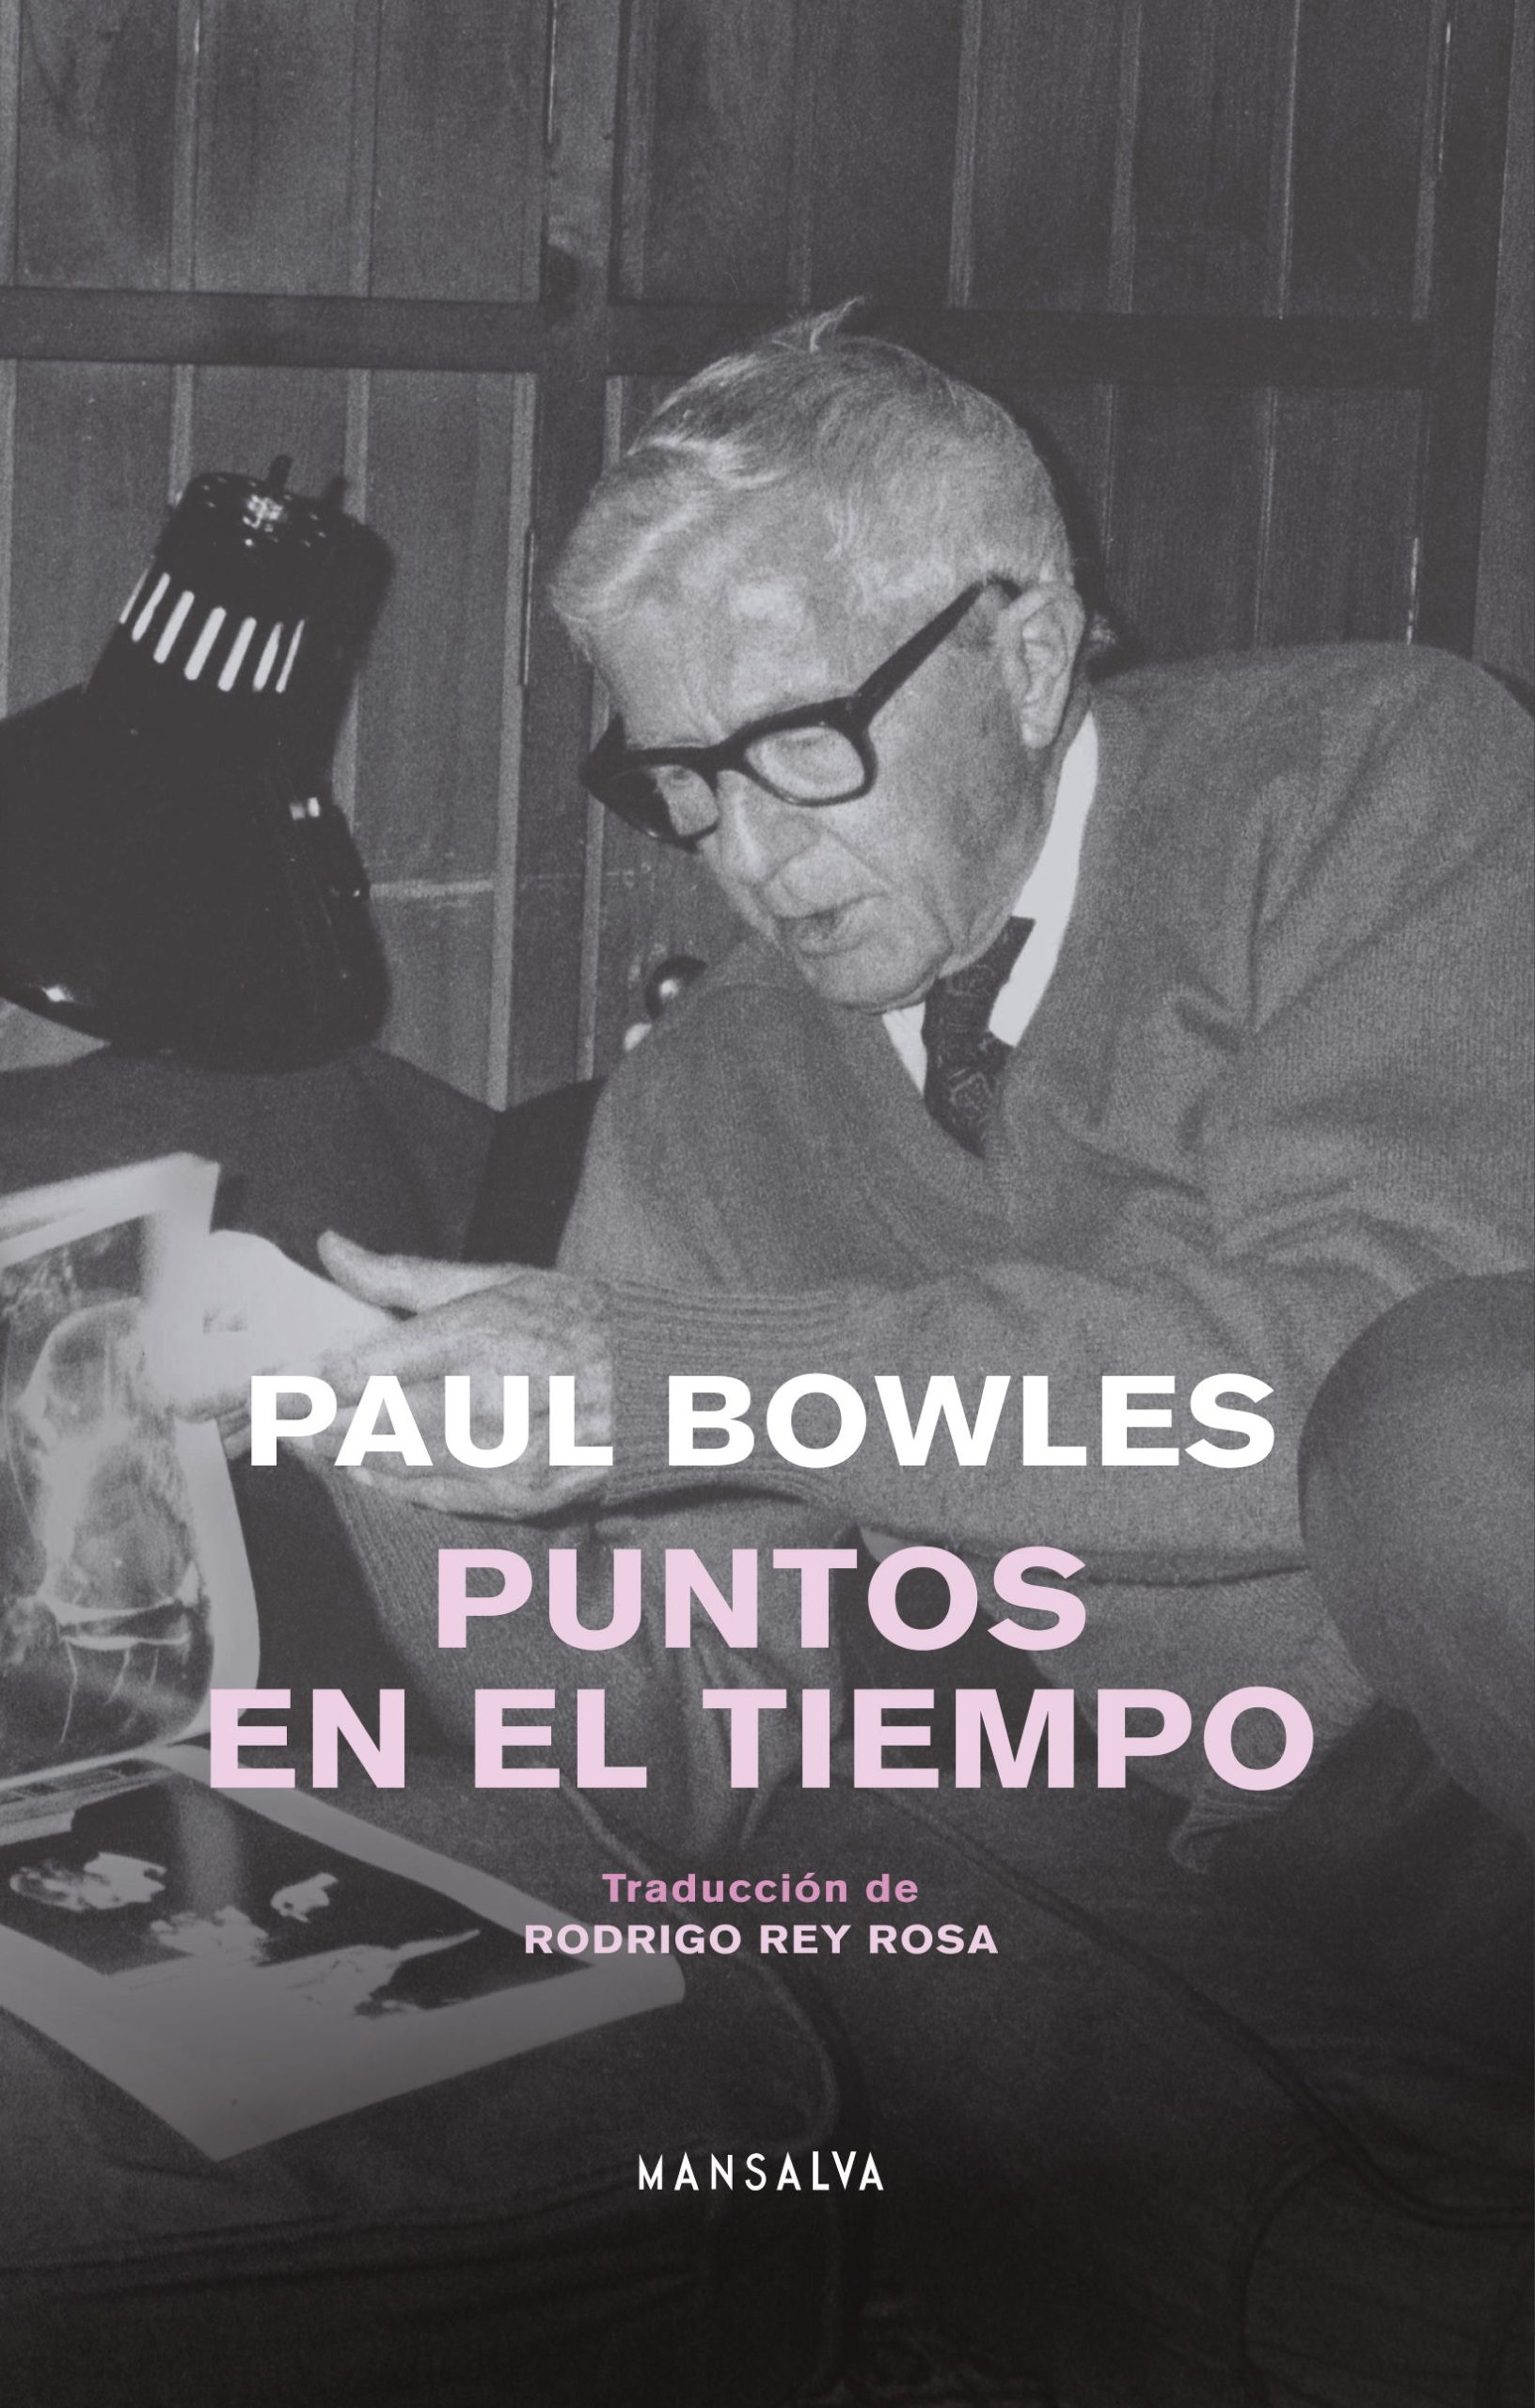 Paul Bowles - Puntos en el tiempo - MANSALVA